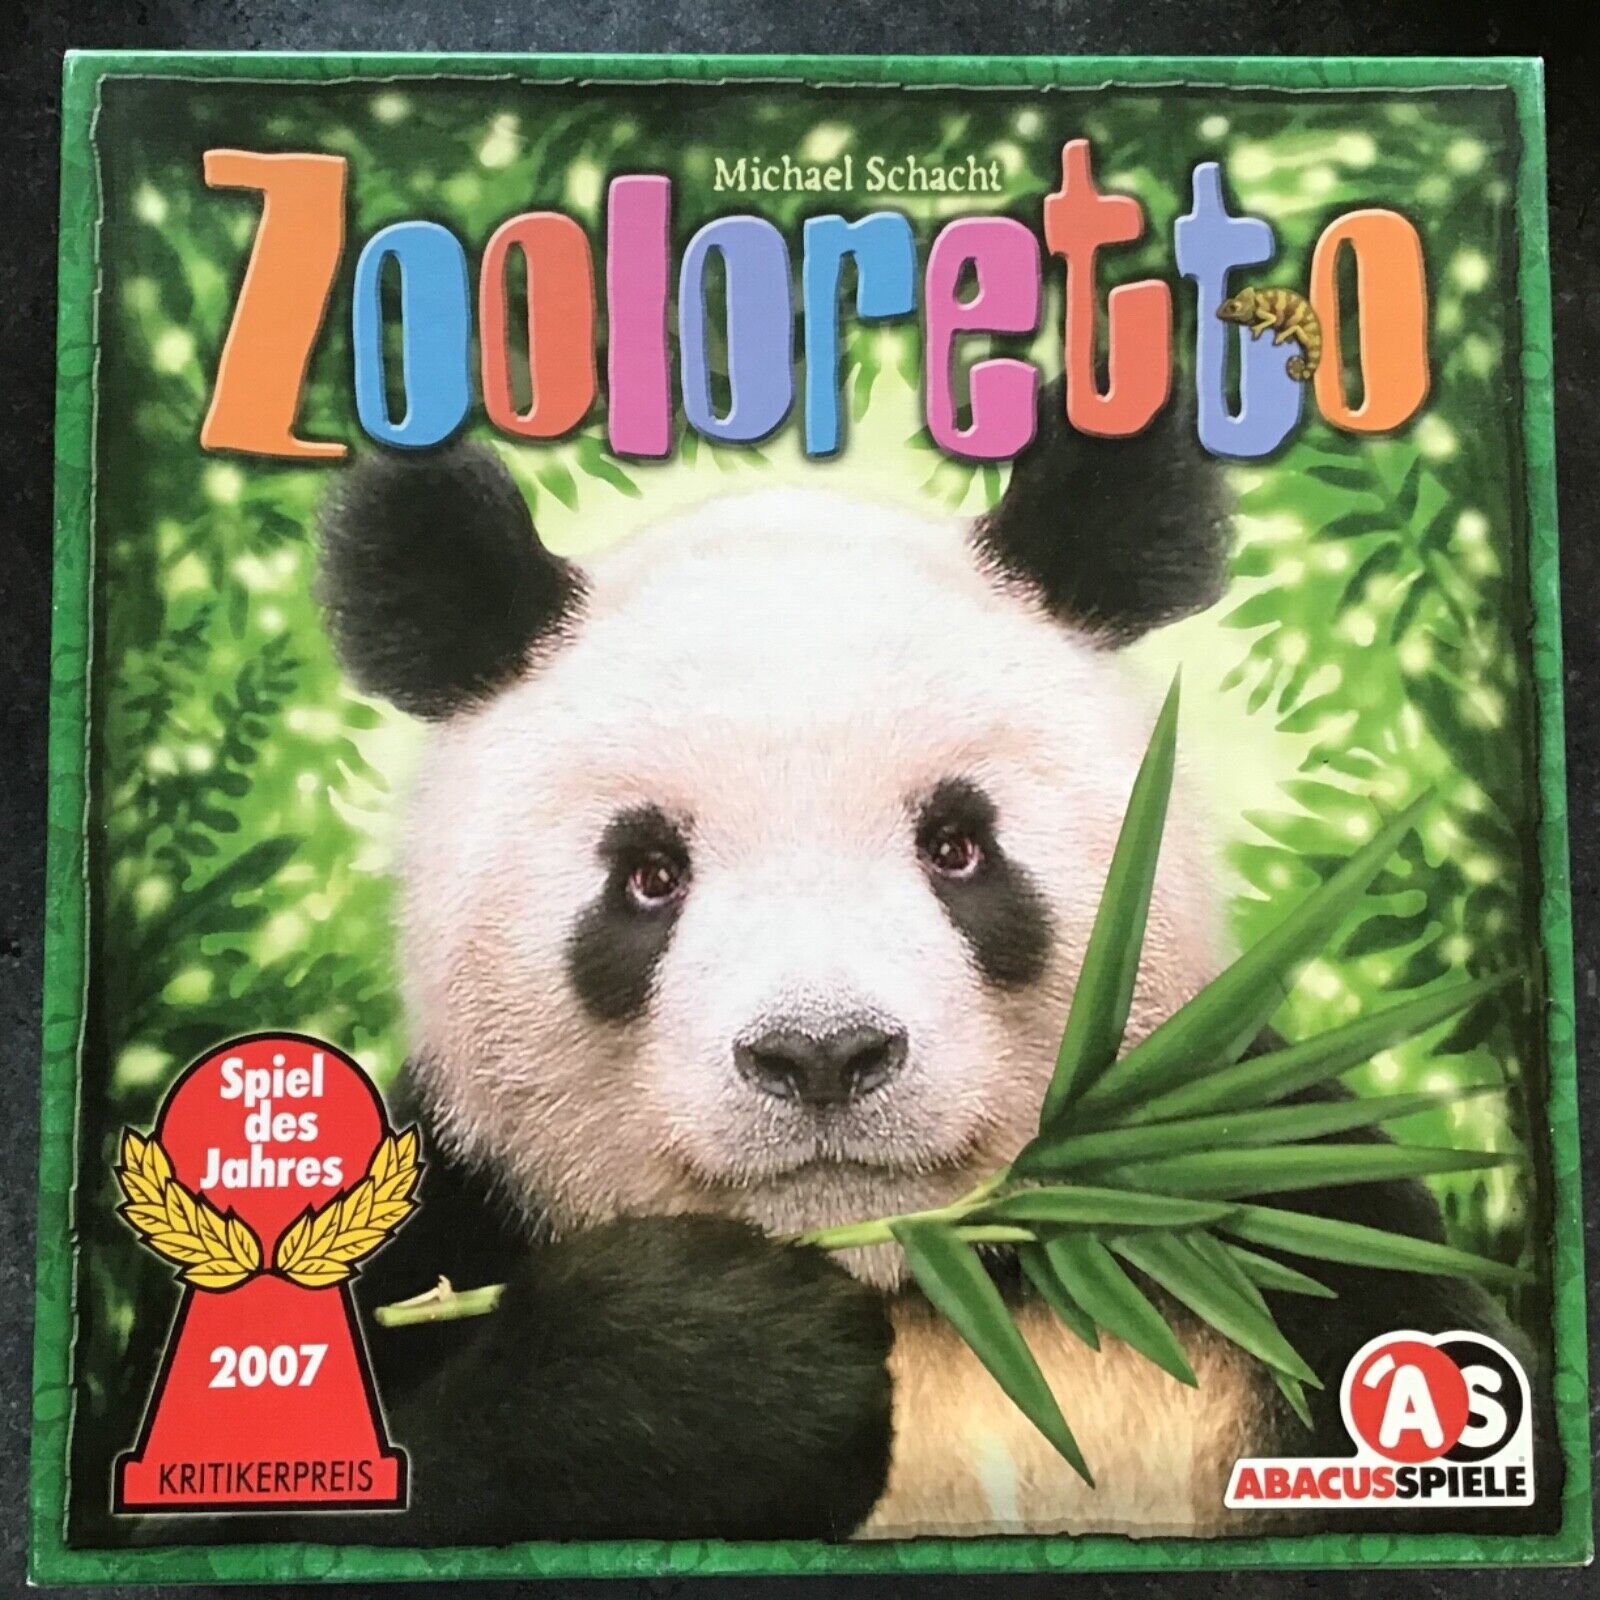 Zoloretto, Abacus Spiele, Familien- und Brettspiel, super Zustand